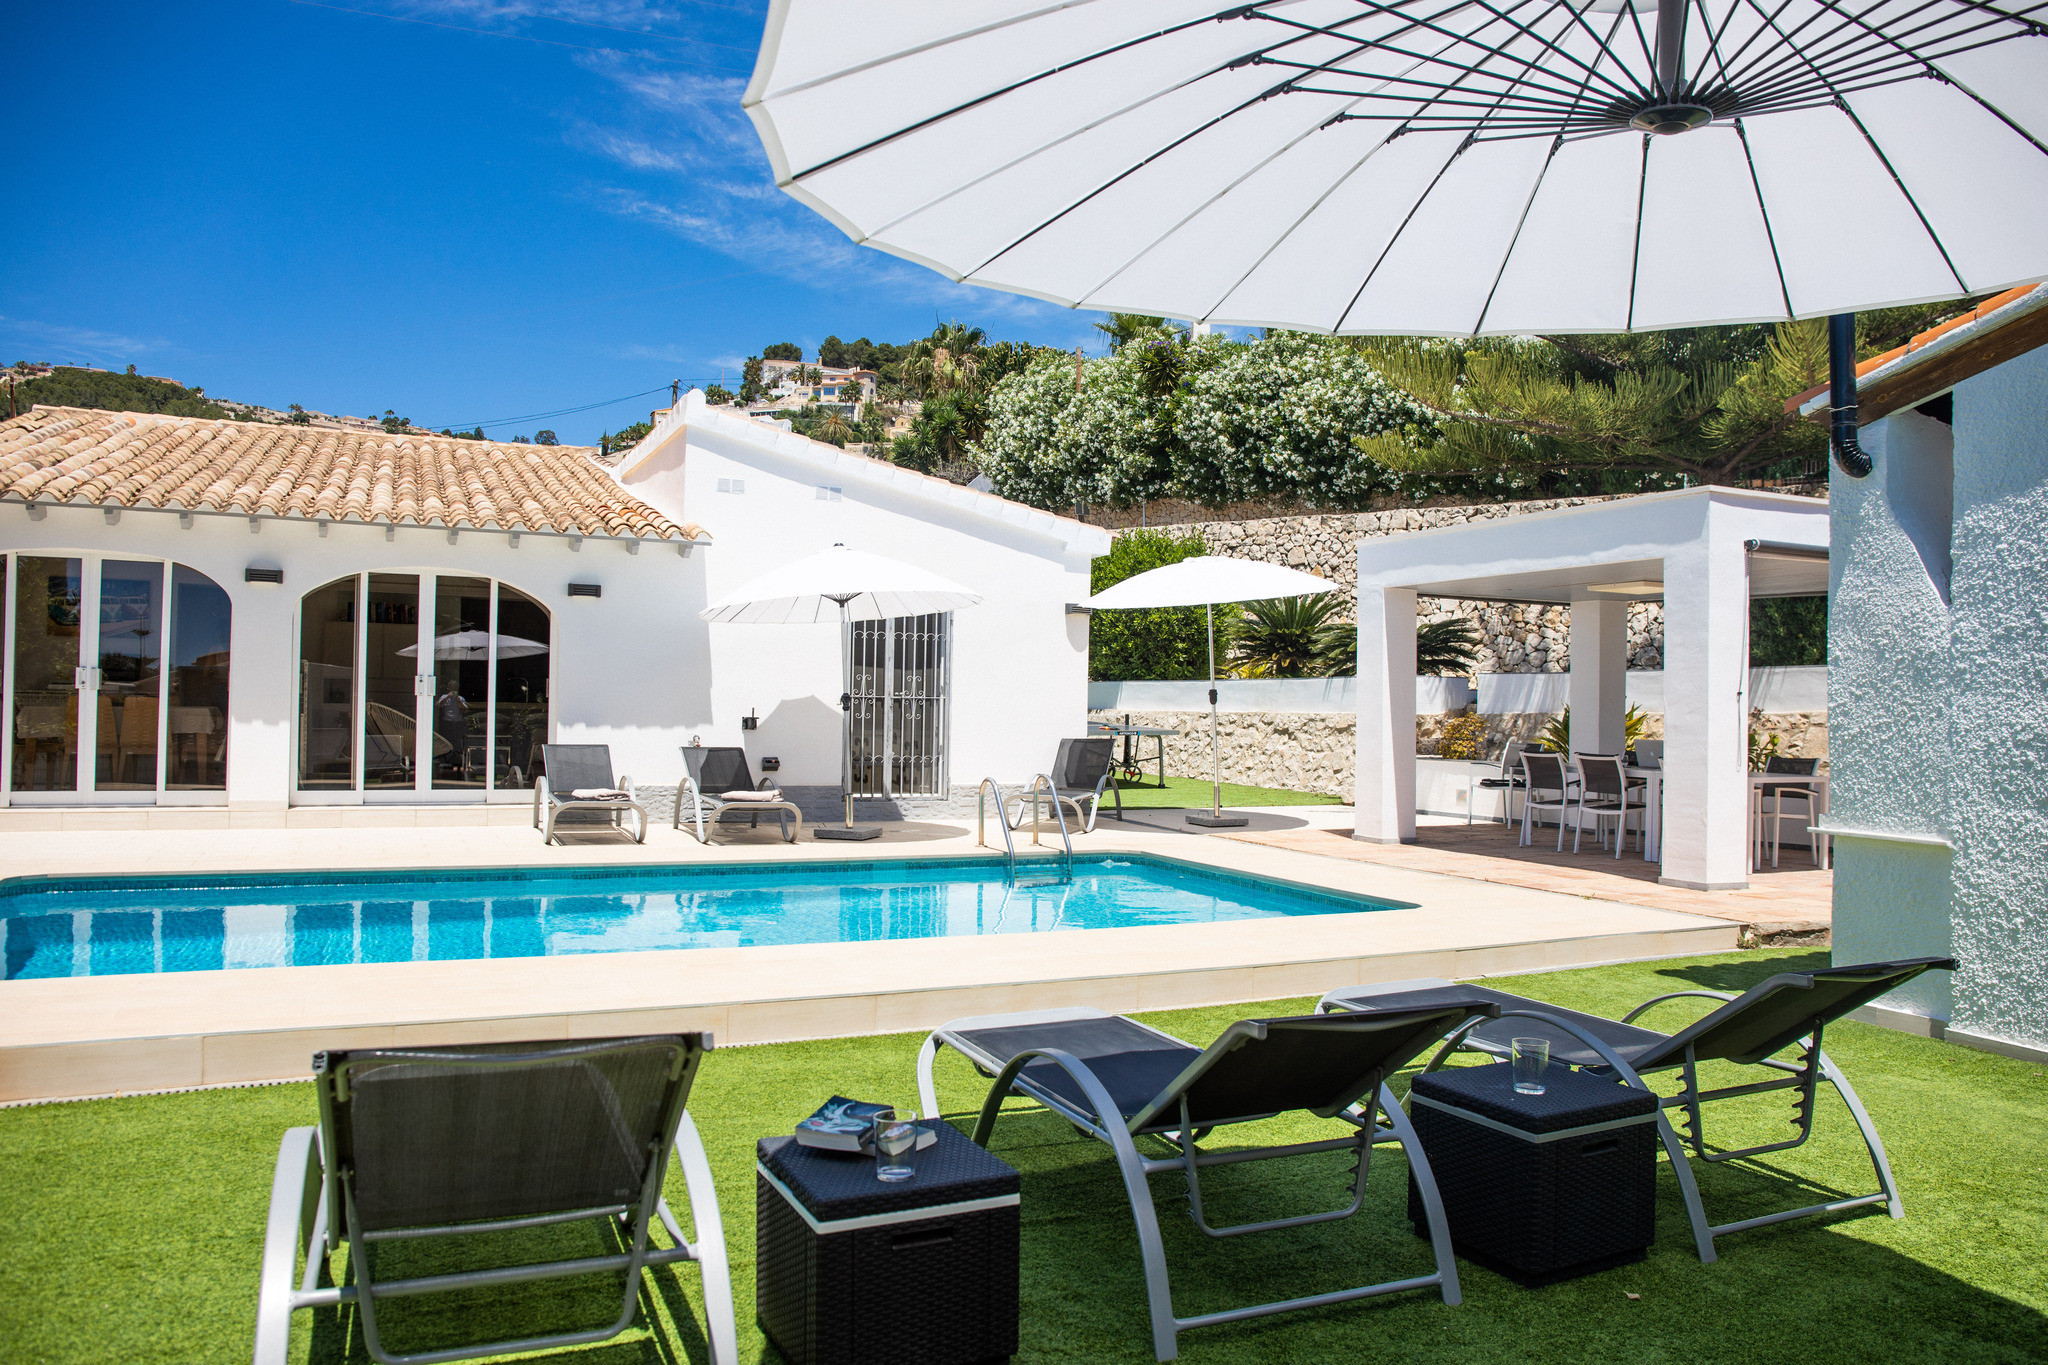 Vrijstaande villa in Moraira met privé zwembad en tuin met ligbedden